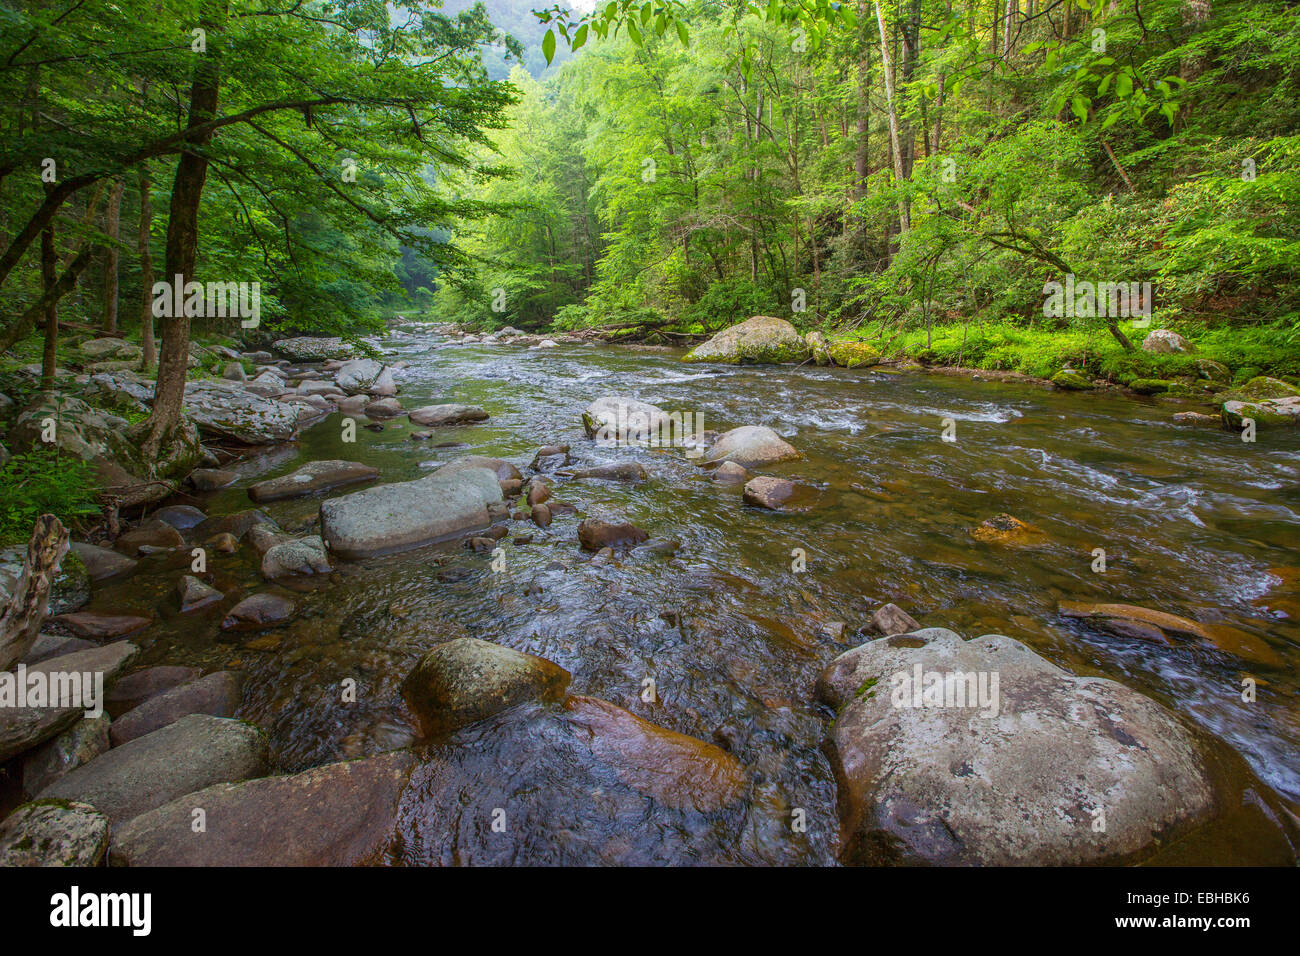 Petite Rivière, ruisseau clair mountan, Notropis et Warpaint shiner lieux de frai, USA, New York, parc national des Great Smoky Mountains Banque D'Images